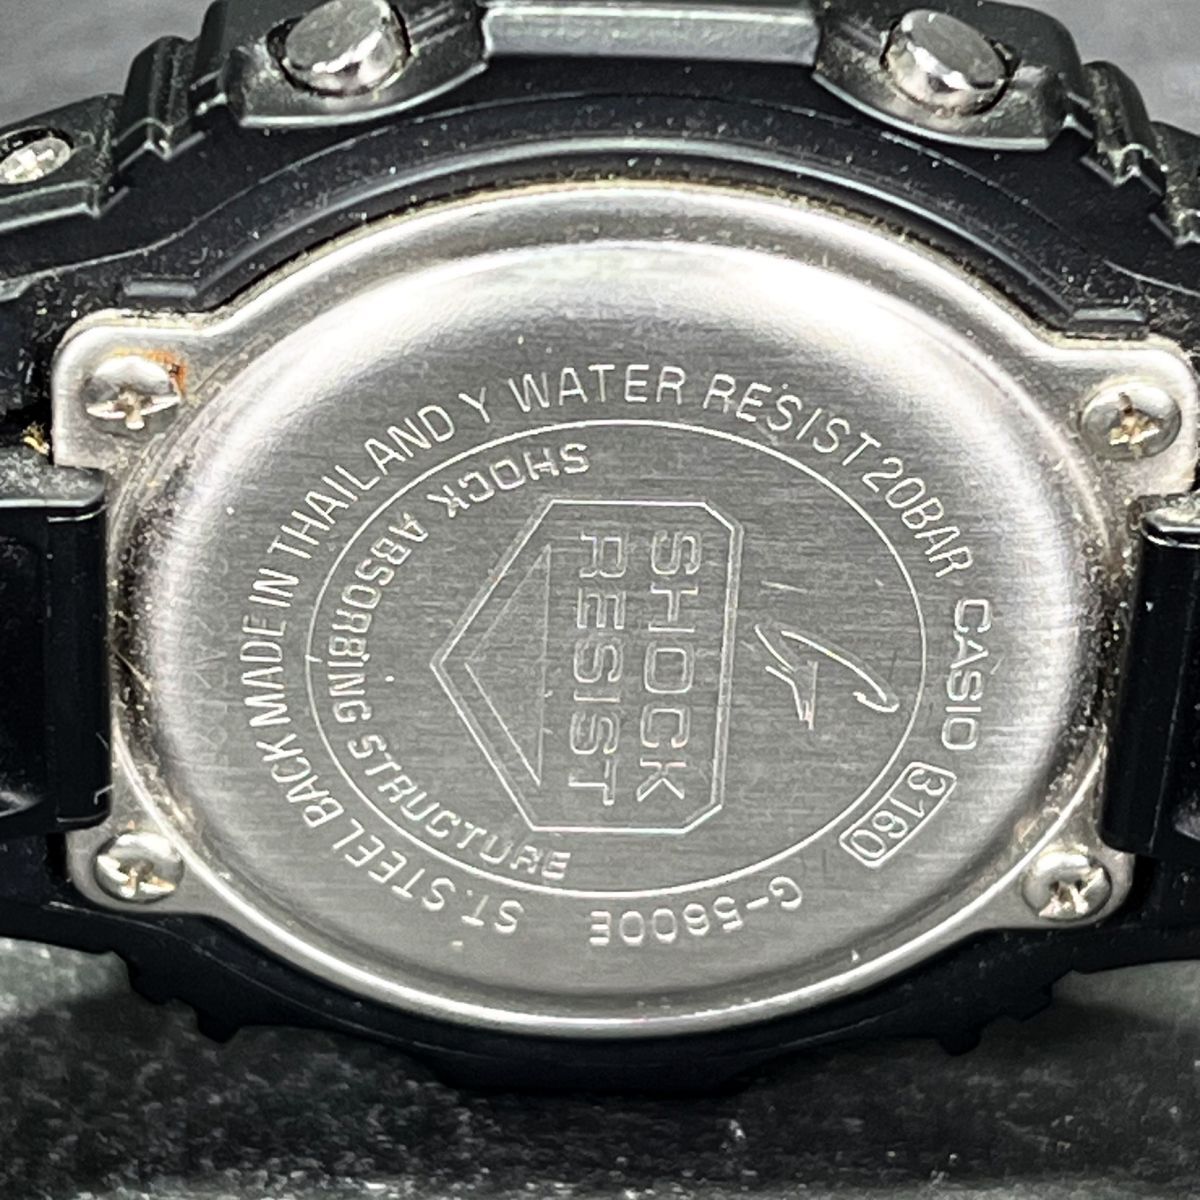 CASIO カシオ G-SHOCK Gショック G-5600E-1JF メンズ 腕時計 デジタル タフソーラー オールブラック カレンダー 多機能 樹脂 動作確認済み